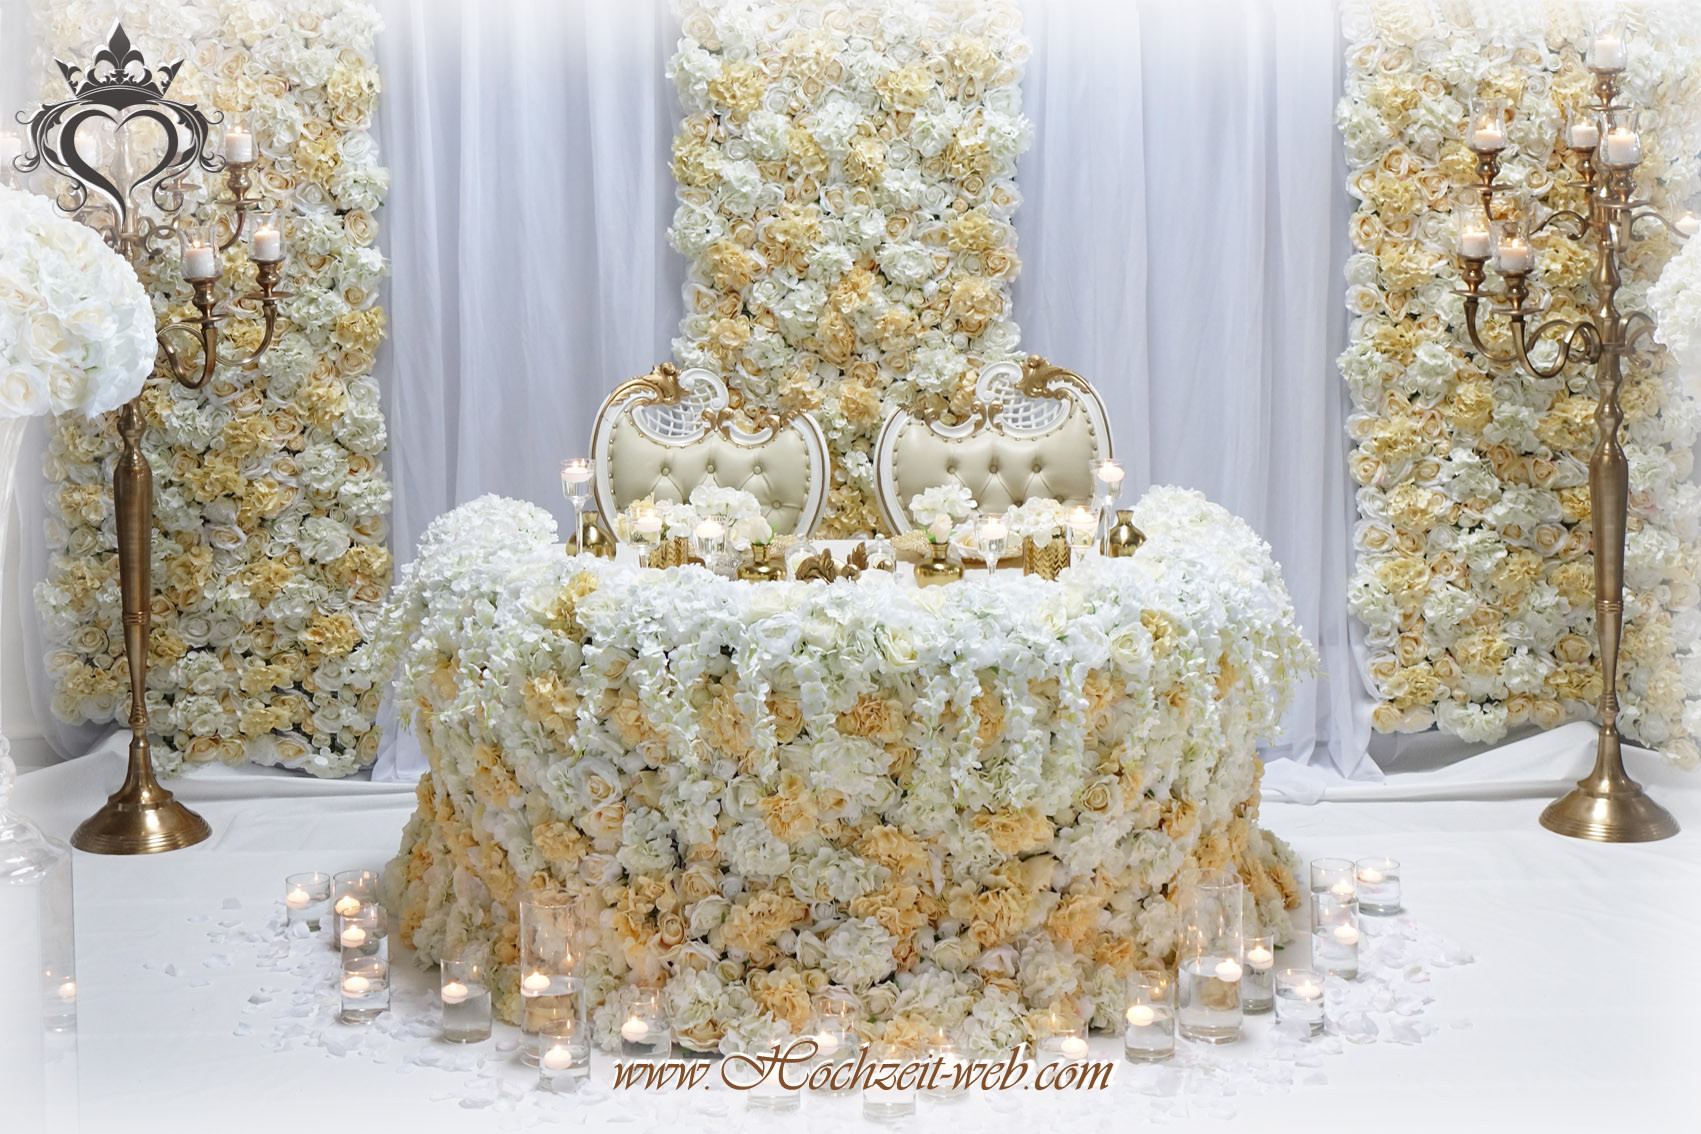 Blumenwand Hochzeit
 Brauttisch oder Verlobungstisch in allen Farben